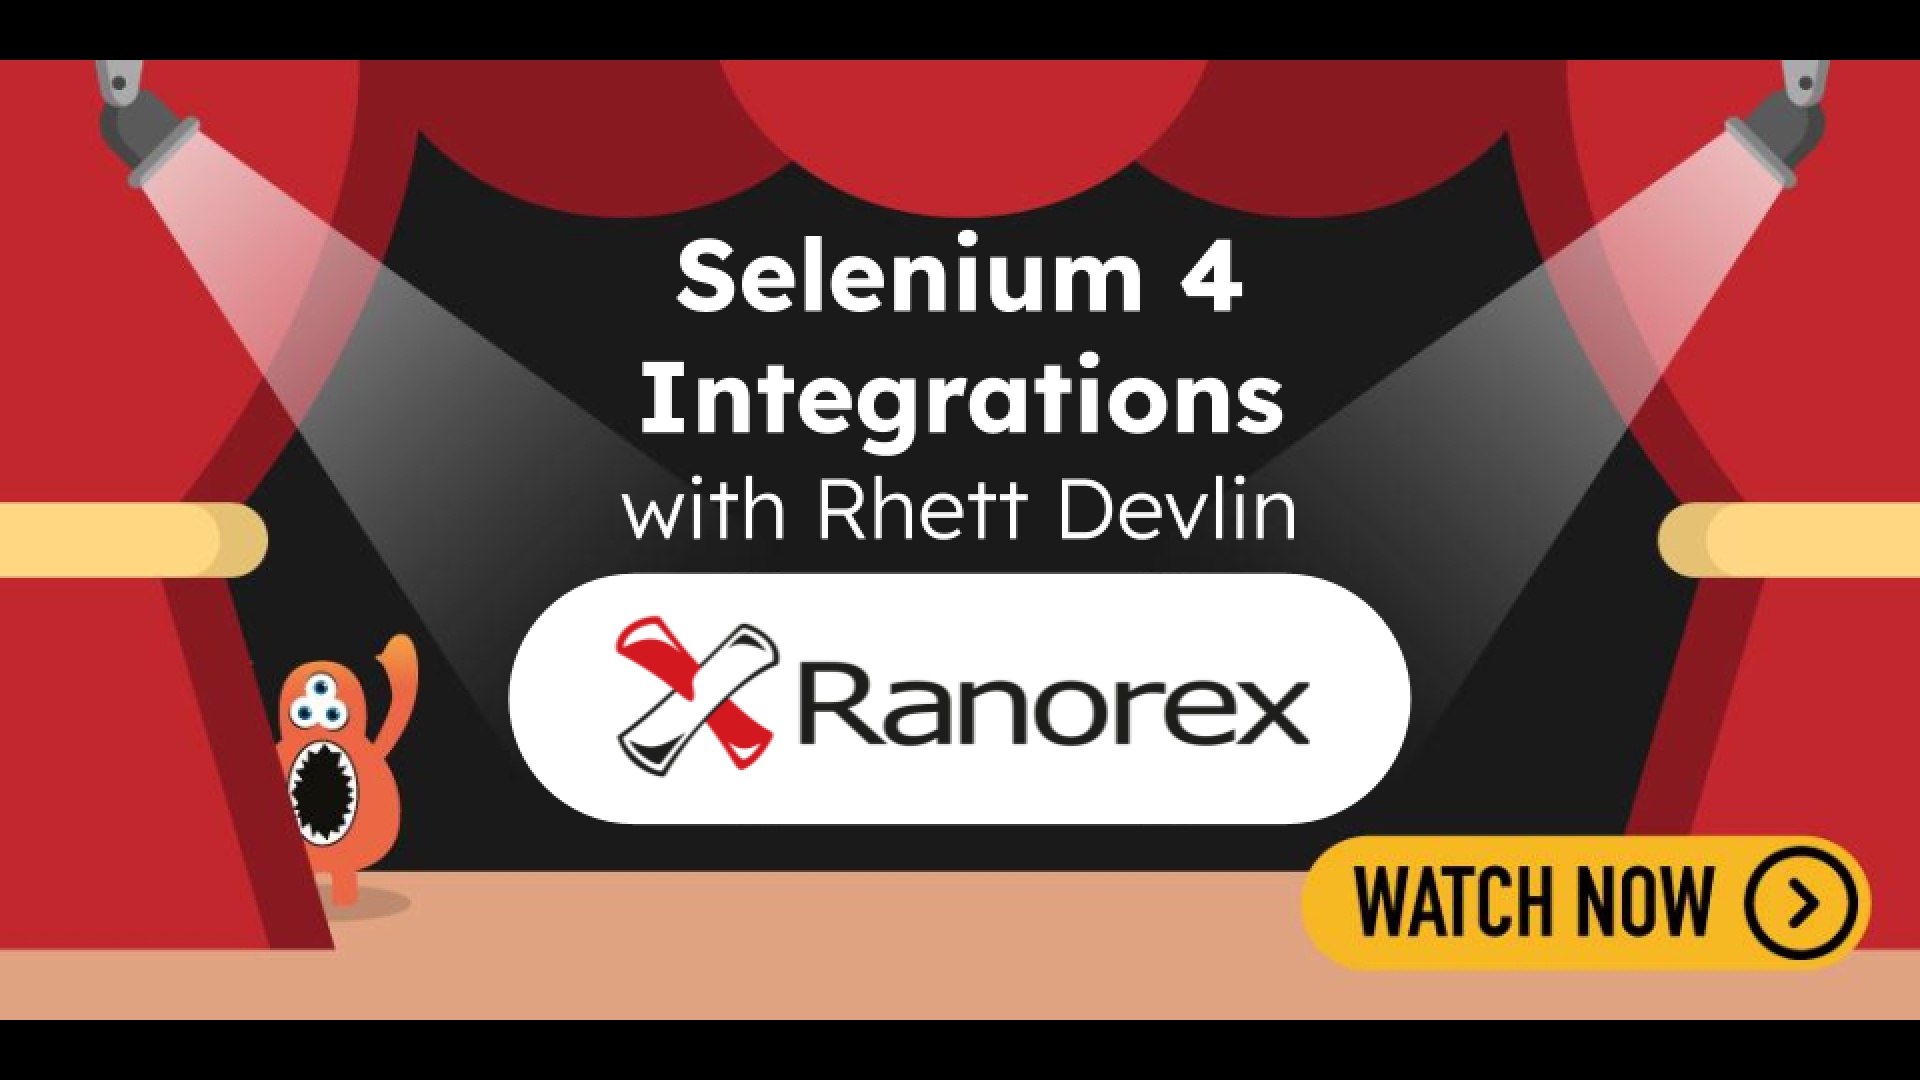 Selenium 4 Integrations with Rhett Devlin